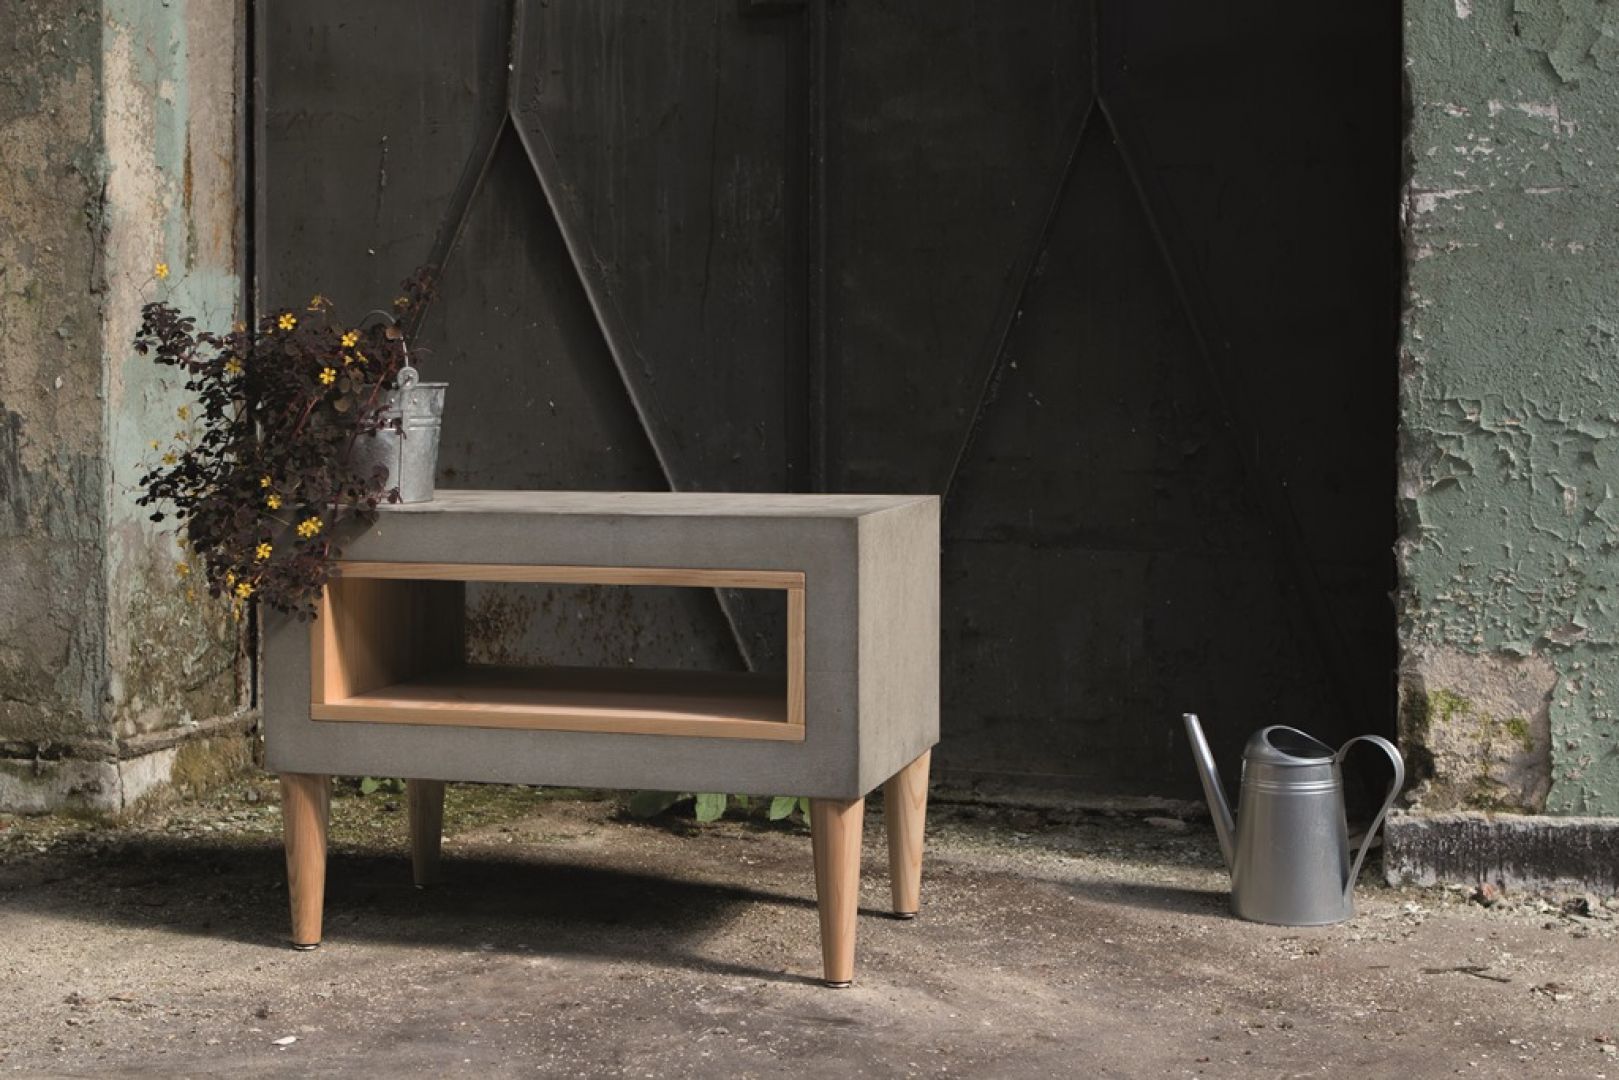 Stolik Timeless łączą tak kontrastowe materiały jak drewno i beton prezentuje się w minimalistycznej stylistyce. Widoczne są również nawiązania do wzornictwa lat 60. Fot. Morgan & Möller